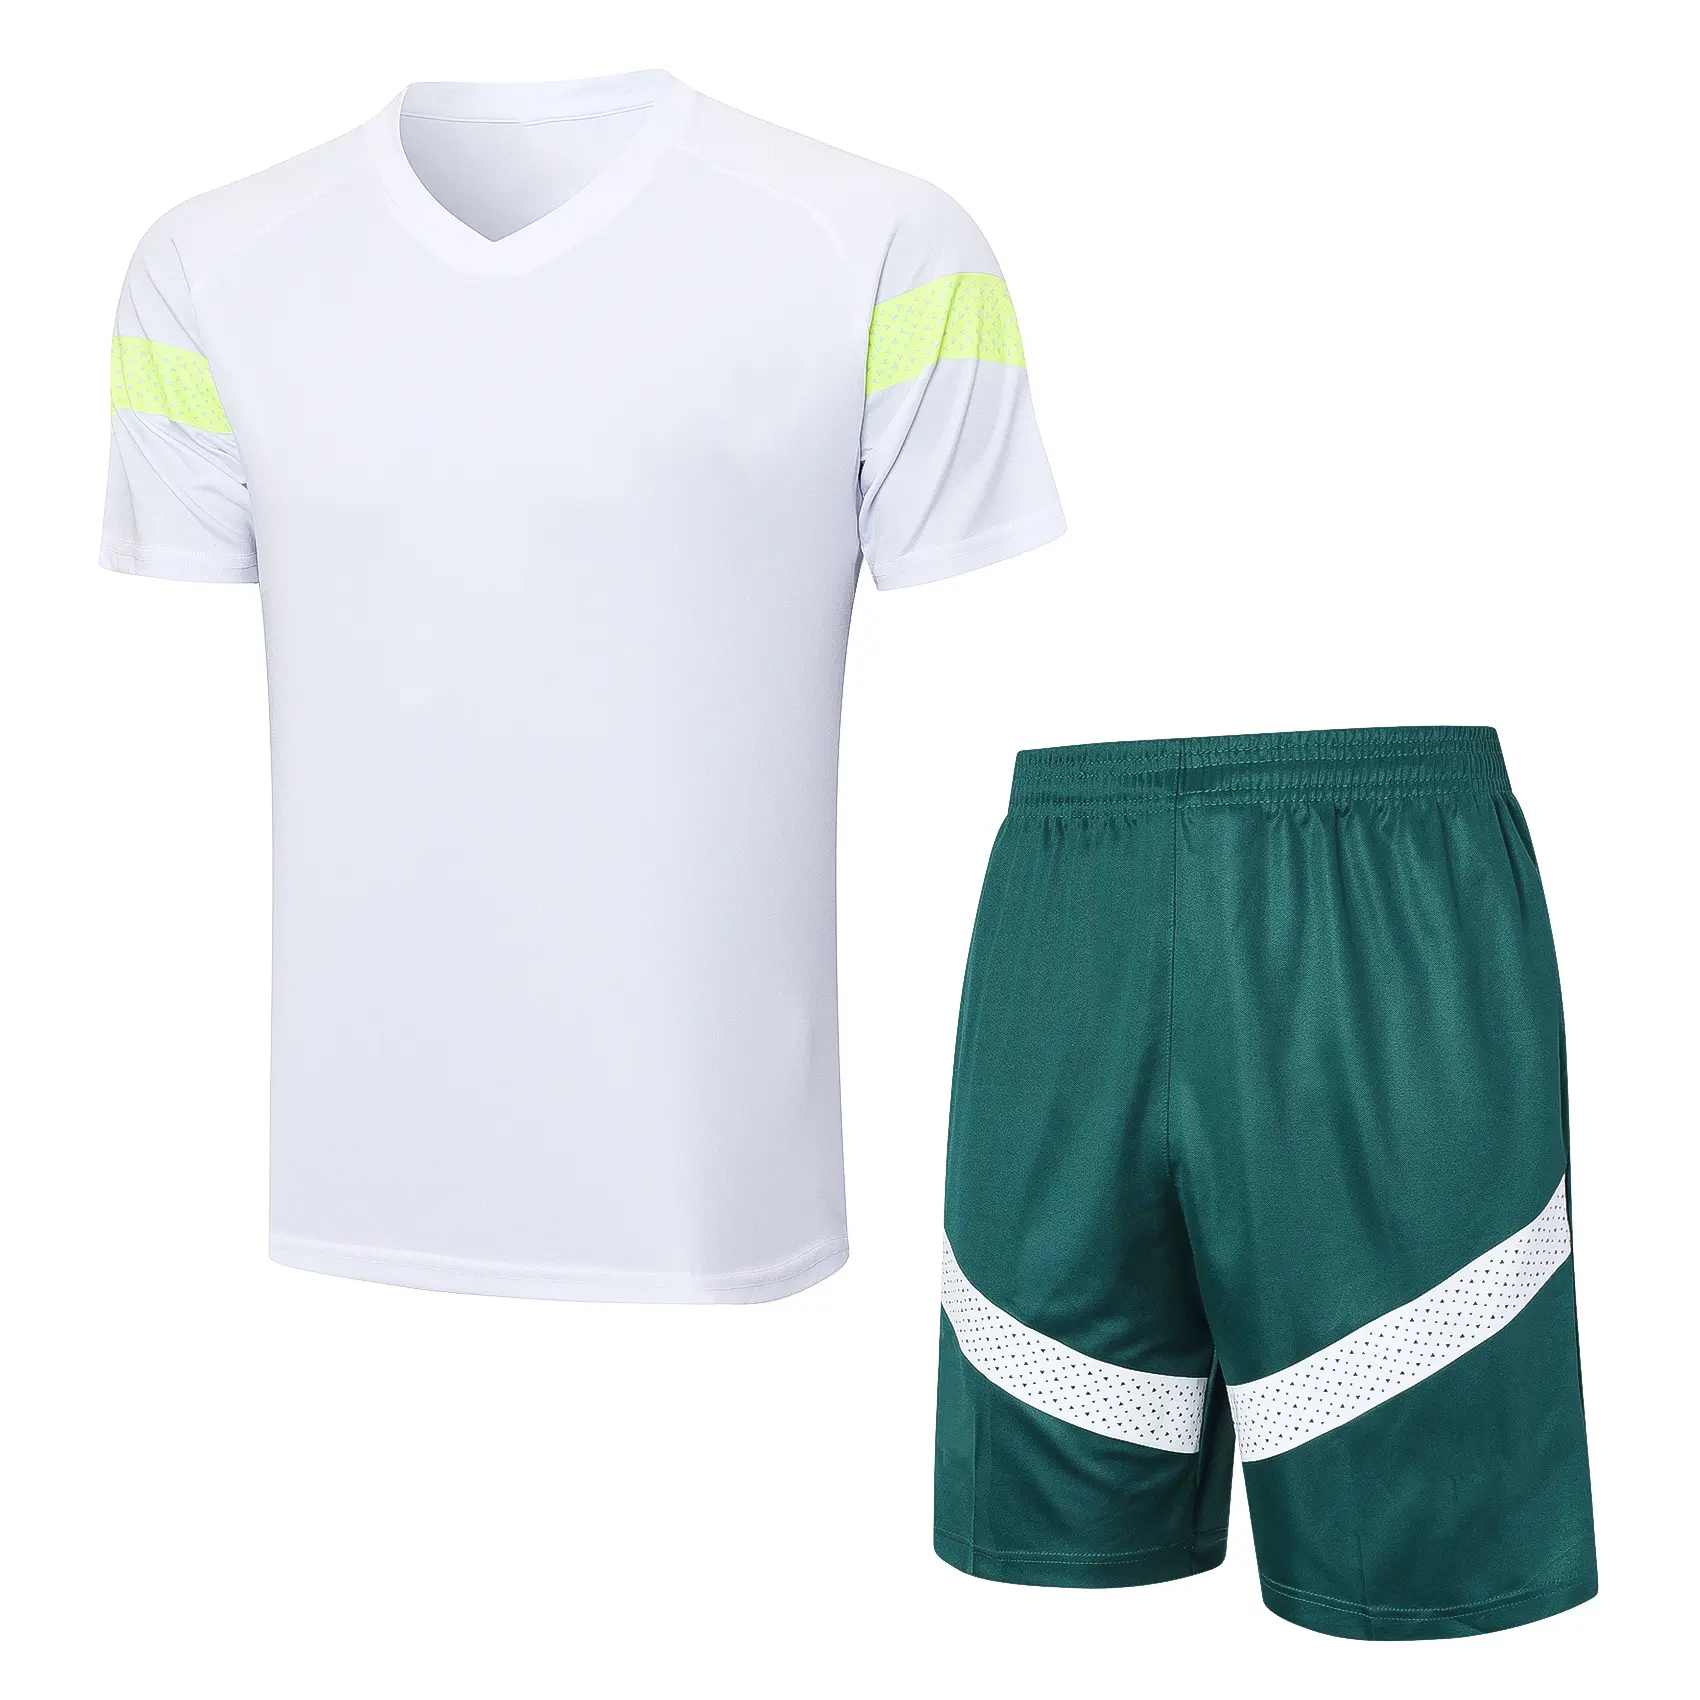 ชุดฝึกซ้อมสีขาวแขนสั้นสำหรับเล่นกีฬาฟุตบอลเสื้อเจอร์ซีย์ฟุตบอล